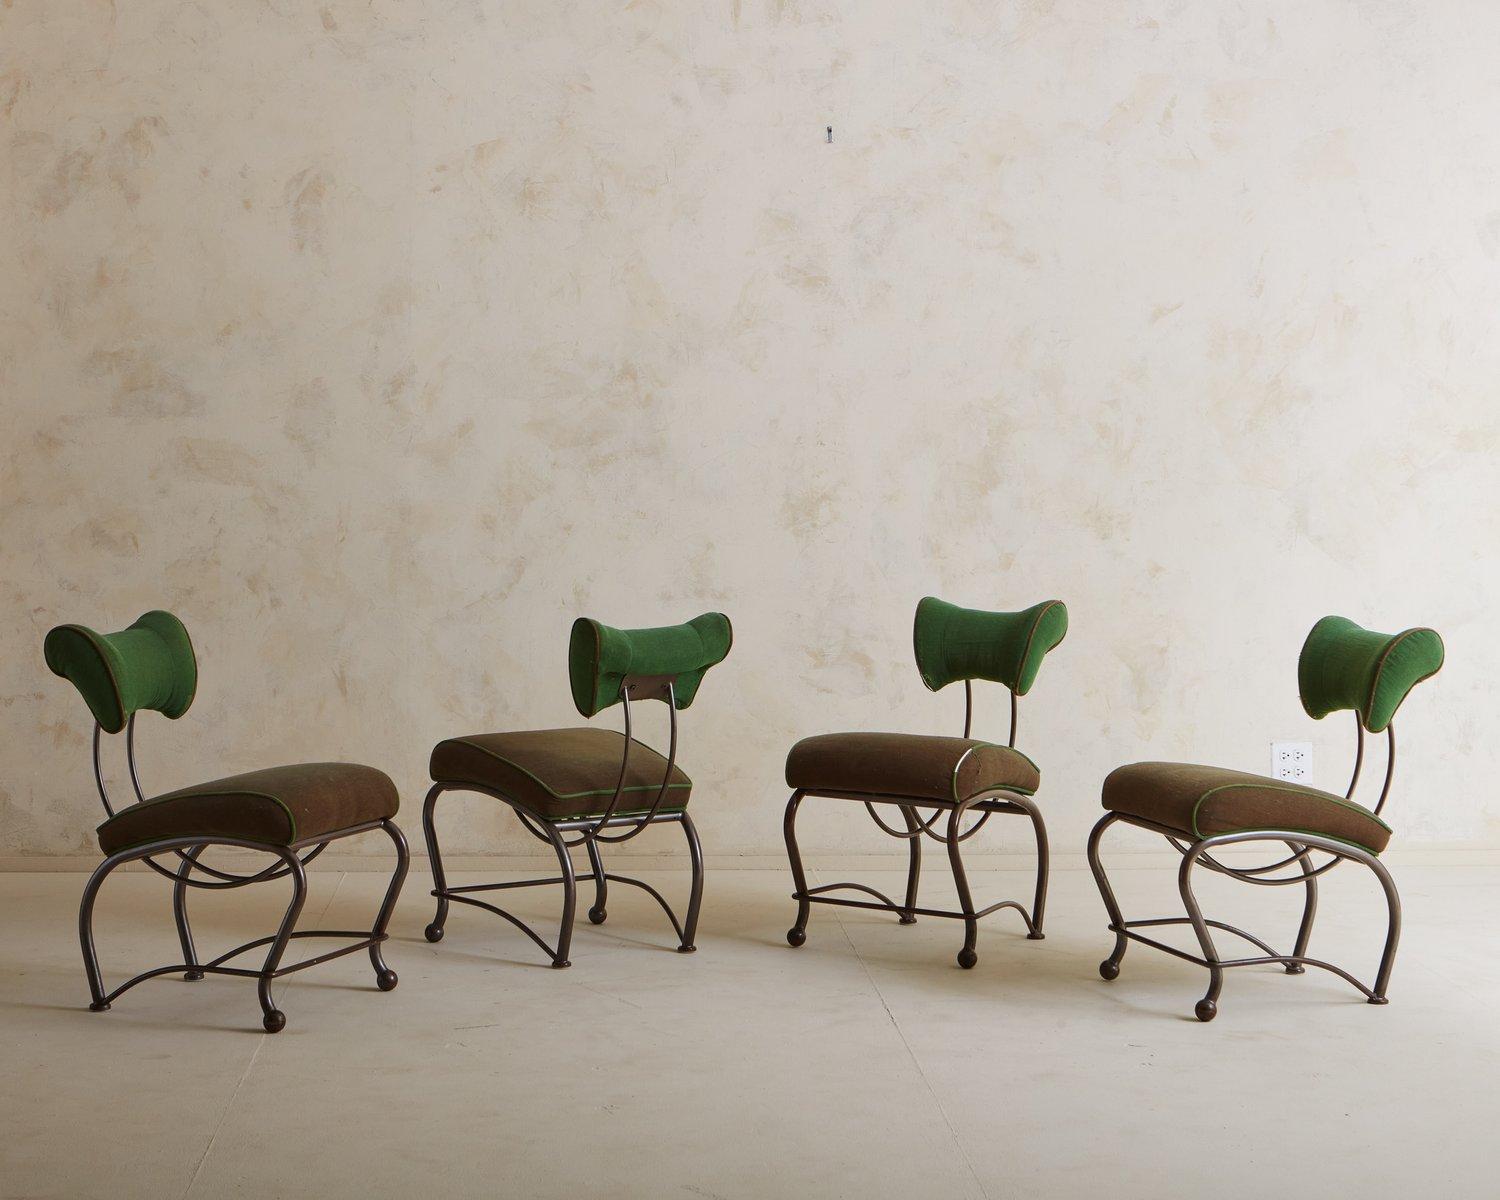 Ein Satz von 4 Elbert-Stühlen, entworfen von Jordan Mozer in den 1990er Jahren und hergestellt von Shelby Williams Industries. Diese einzigartigen Stühle haben skulpturale Stahlrahmen mit geschwungenen, gepolsterten Sitzflächen und Rückenlehnen aus